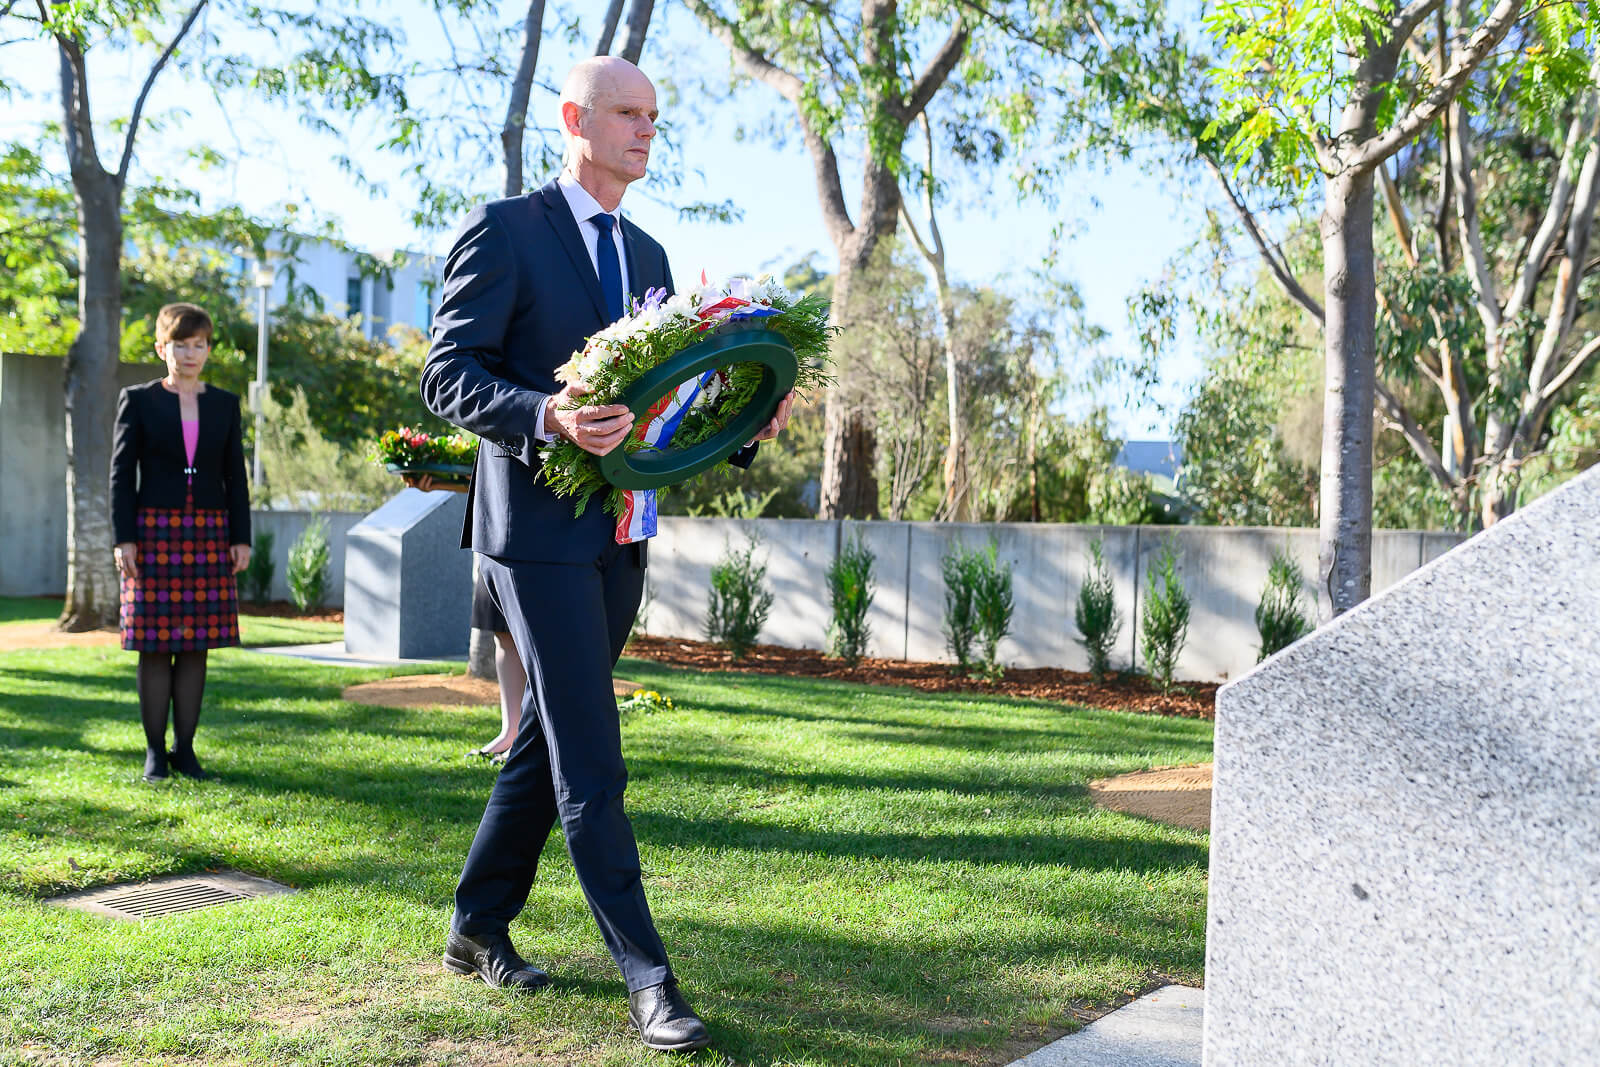 Stef Blok legt bloemenkrans bij MH17 memorial site in Canberra, maart 2019 - Flickr- Rohan Thomson